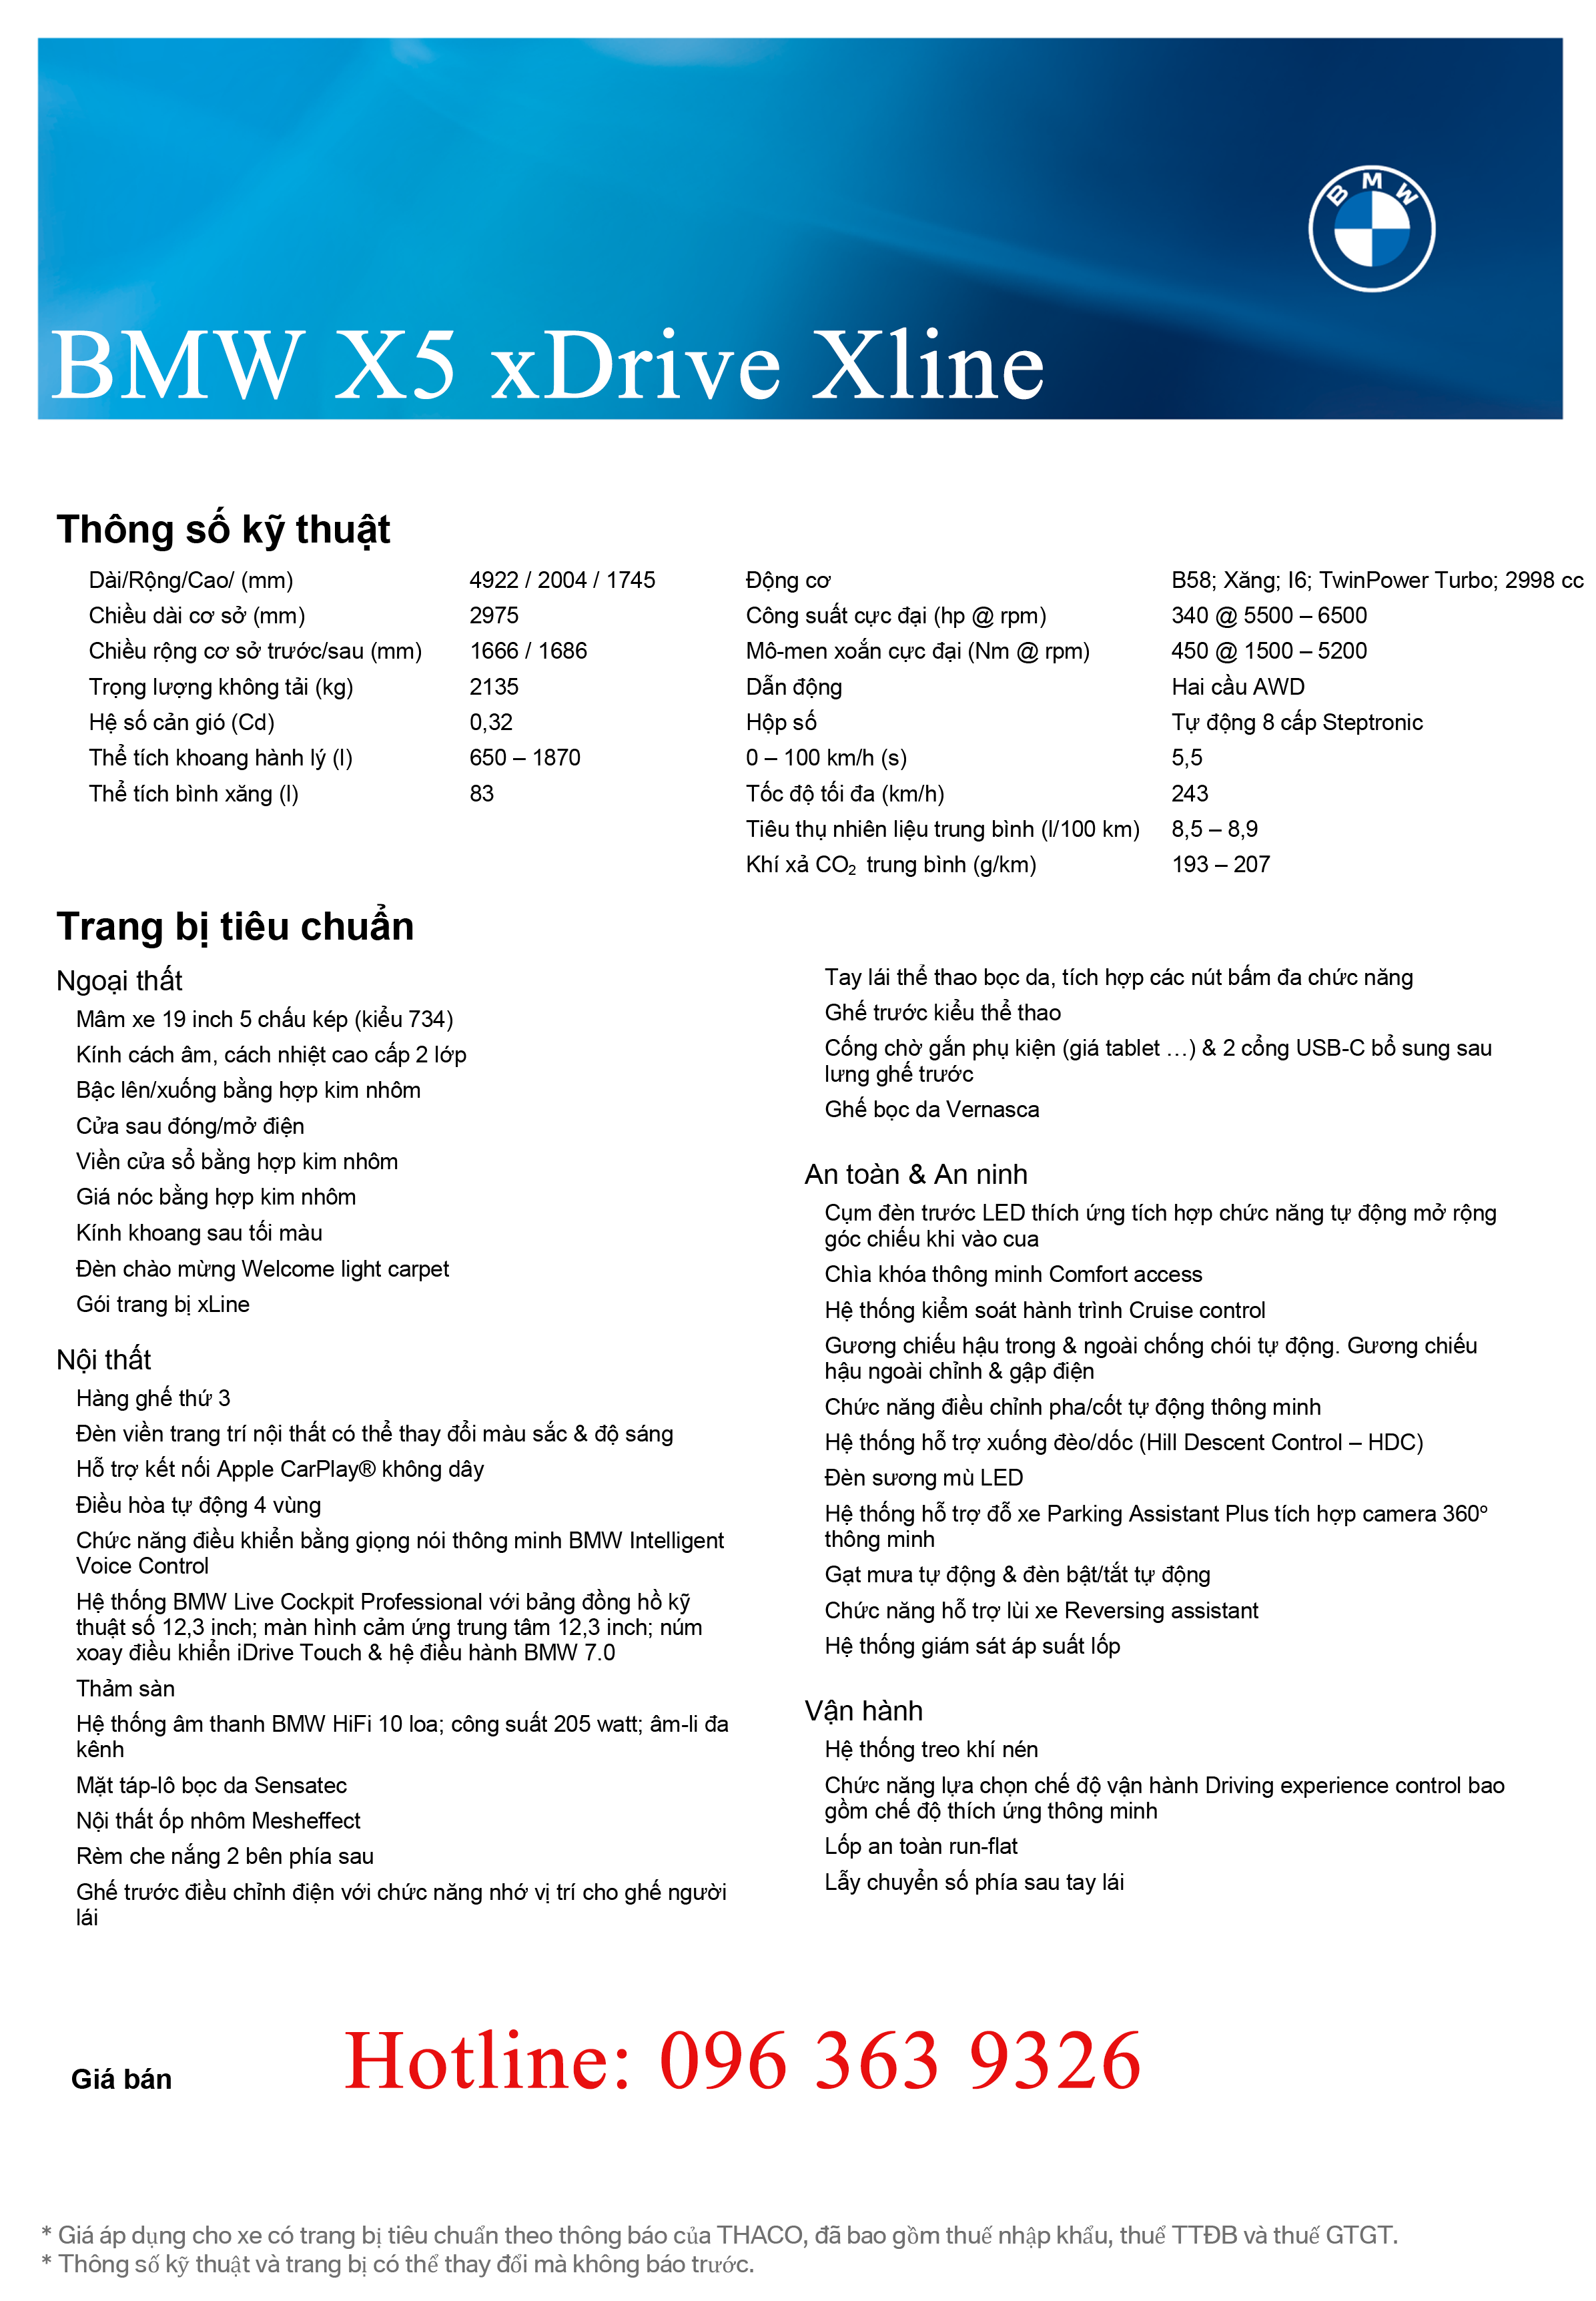 Thông số kỹ thuật BMW X5 Xline